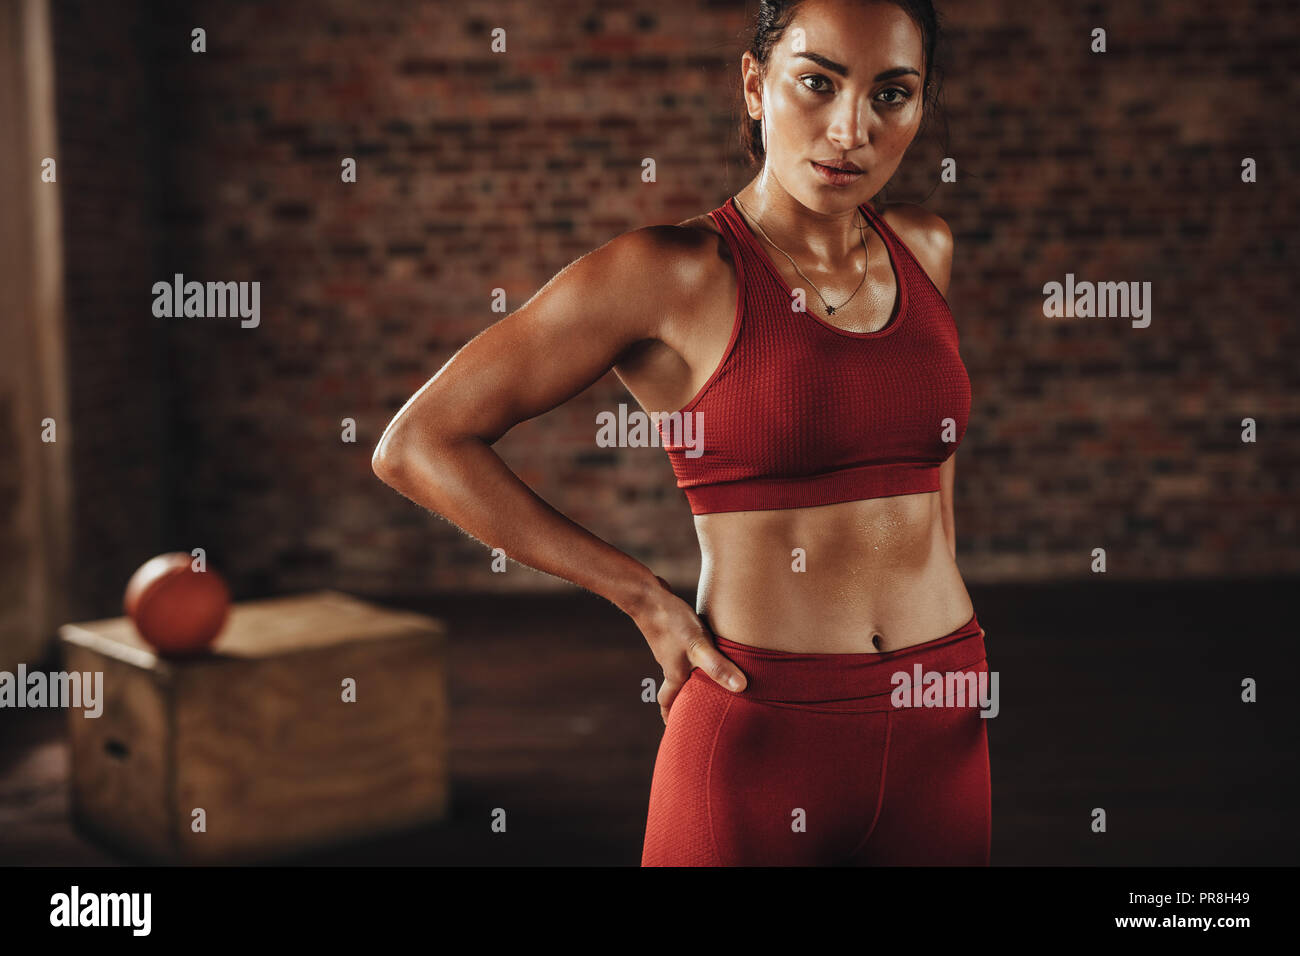 Frau, die nach dem Training im Fitnessstudio steht. Gym-Frau in roter Sportkleidung, die in die Kamera schaut. Stockfoto